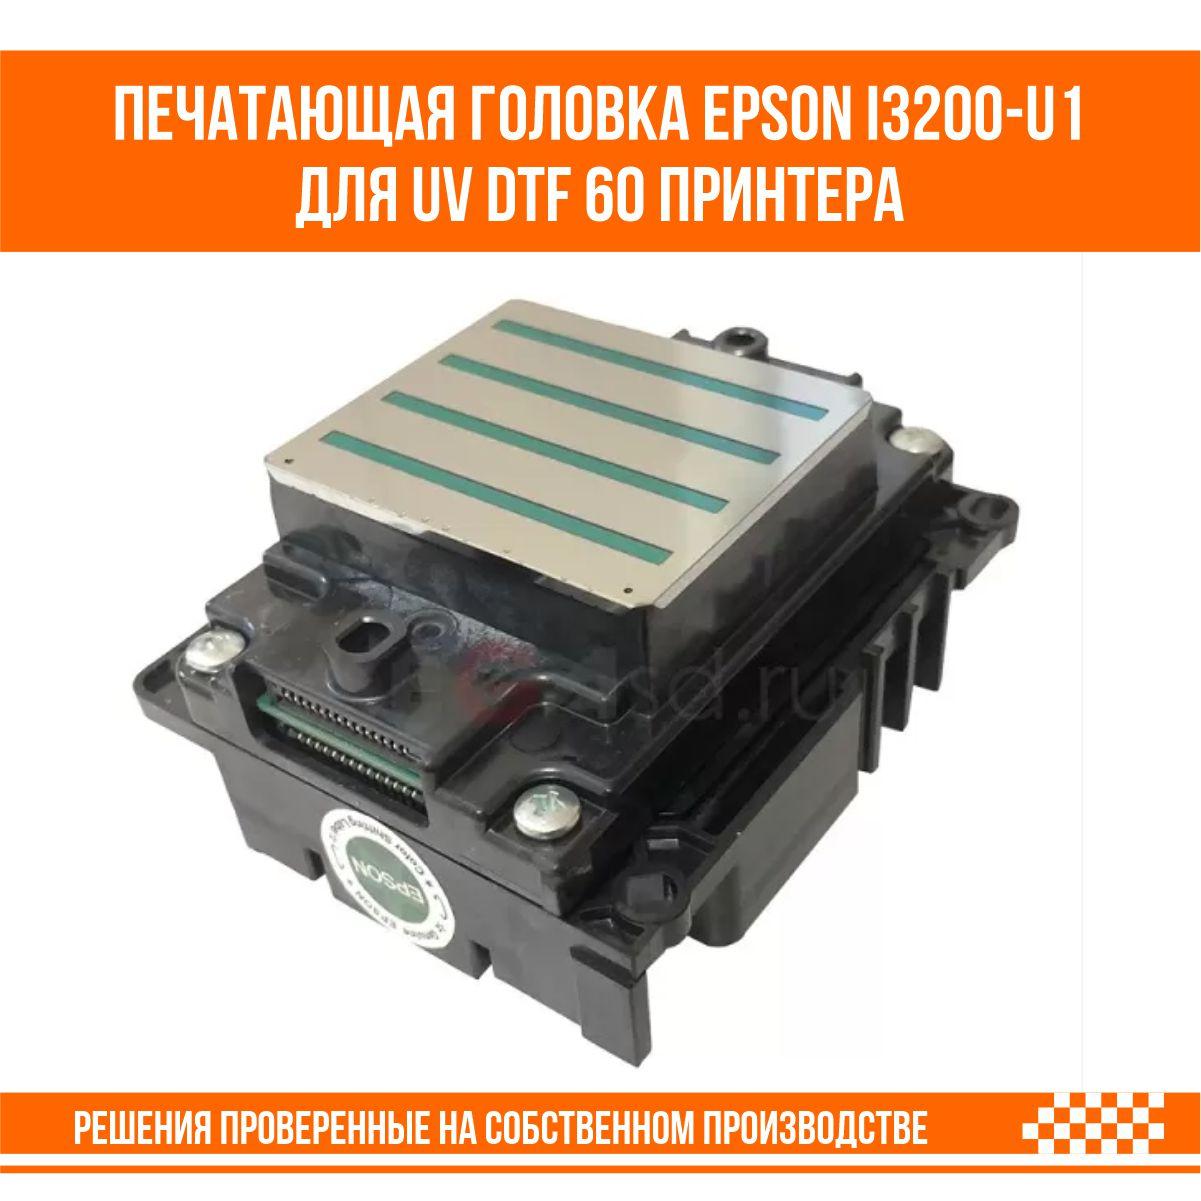 Печатающая головка Epson i3200-u1 для UVDTF60 принтера, фото 1